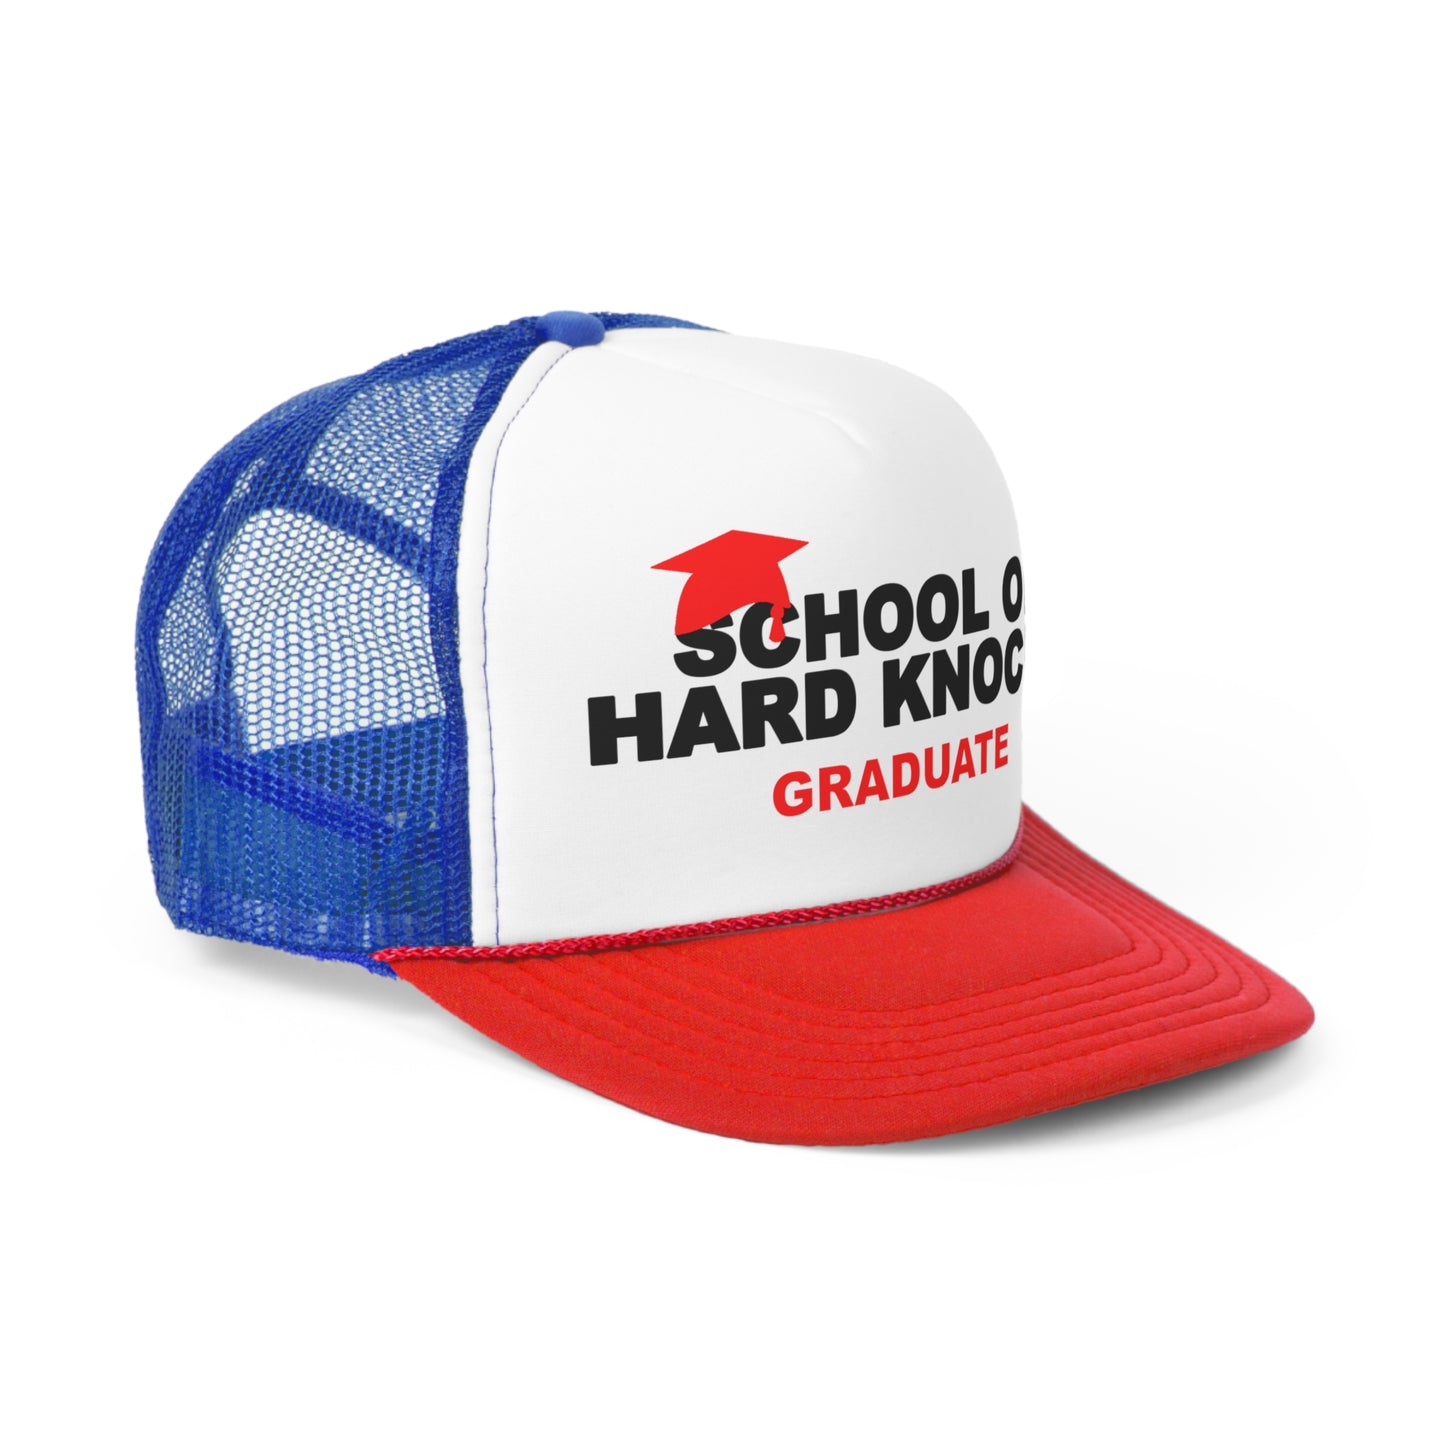 School of Hard Knocks Graduate Snapback Trucker Hat Great gift for a Hip-Hop & Rap lover, School of Hard Knocks Hat